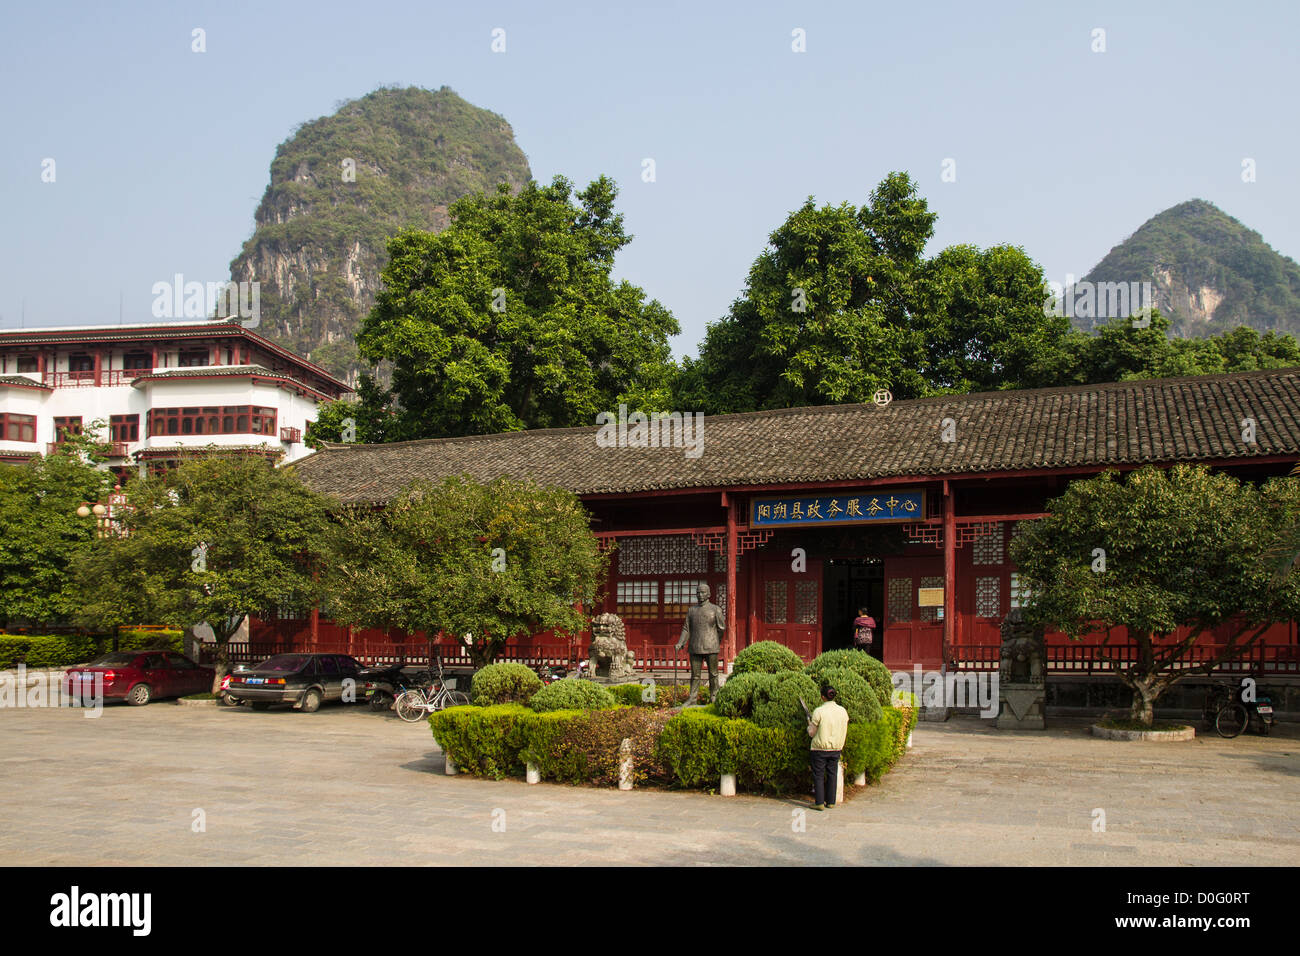 Cina Guangxi Yangshuo, Sun Yat Sen statua & town center square Foto Stock